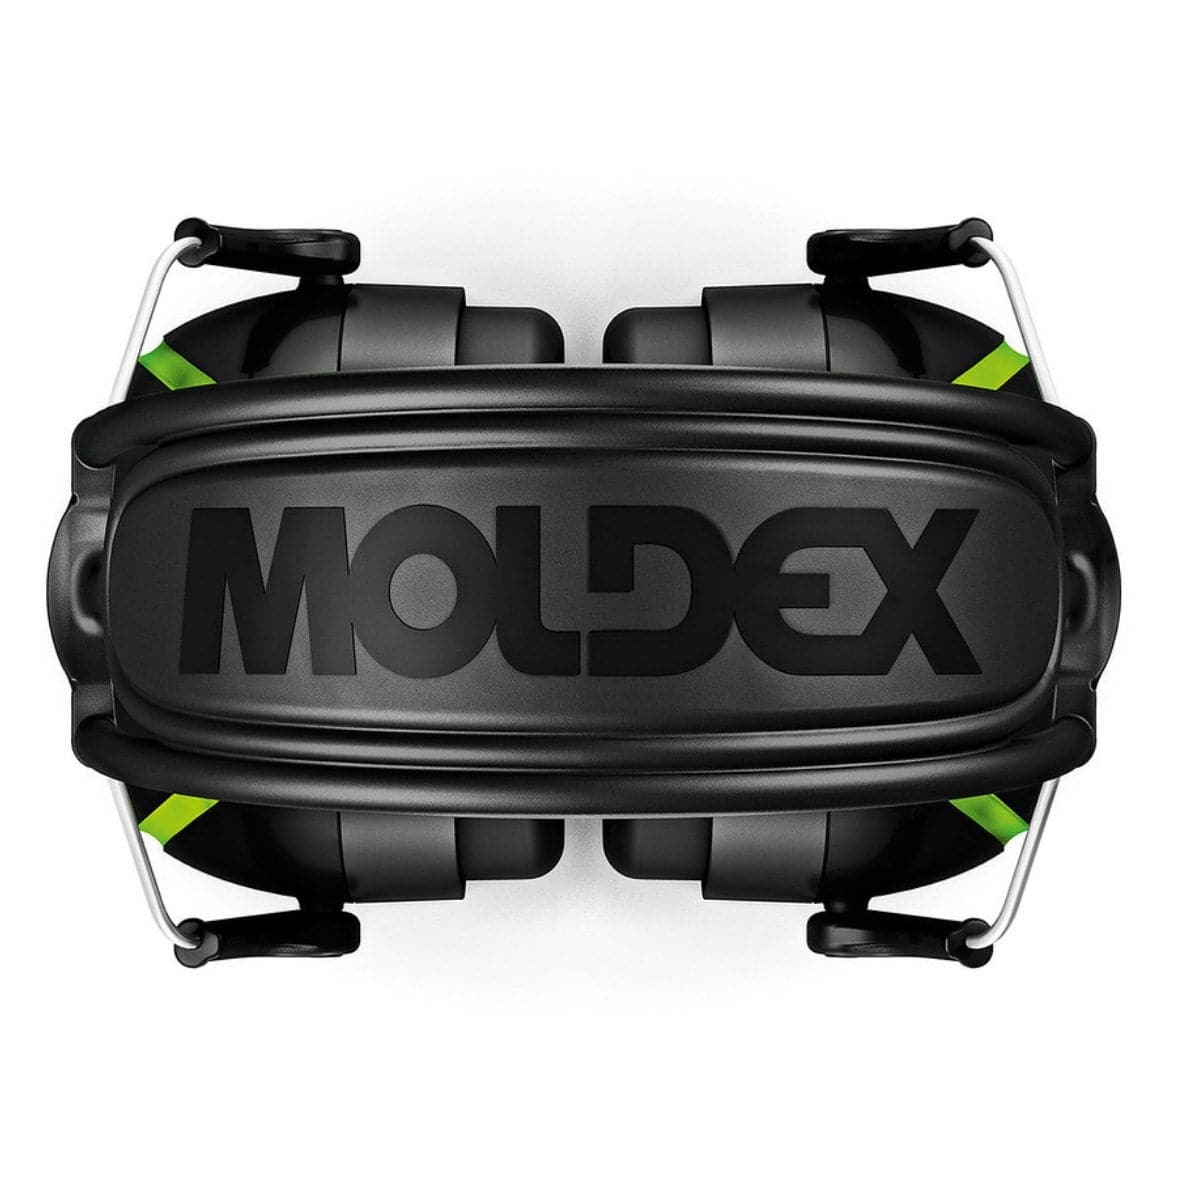 Moldex MX-6 34db Earmuff